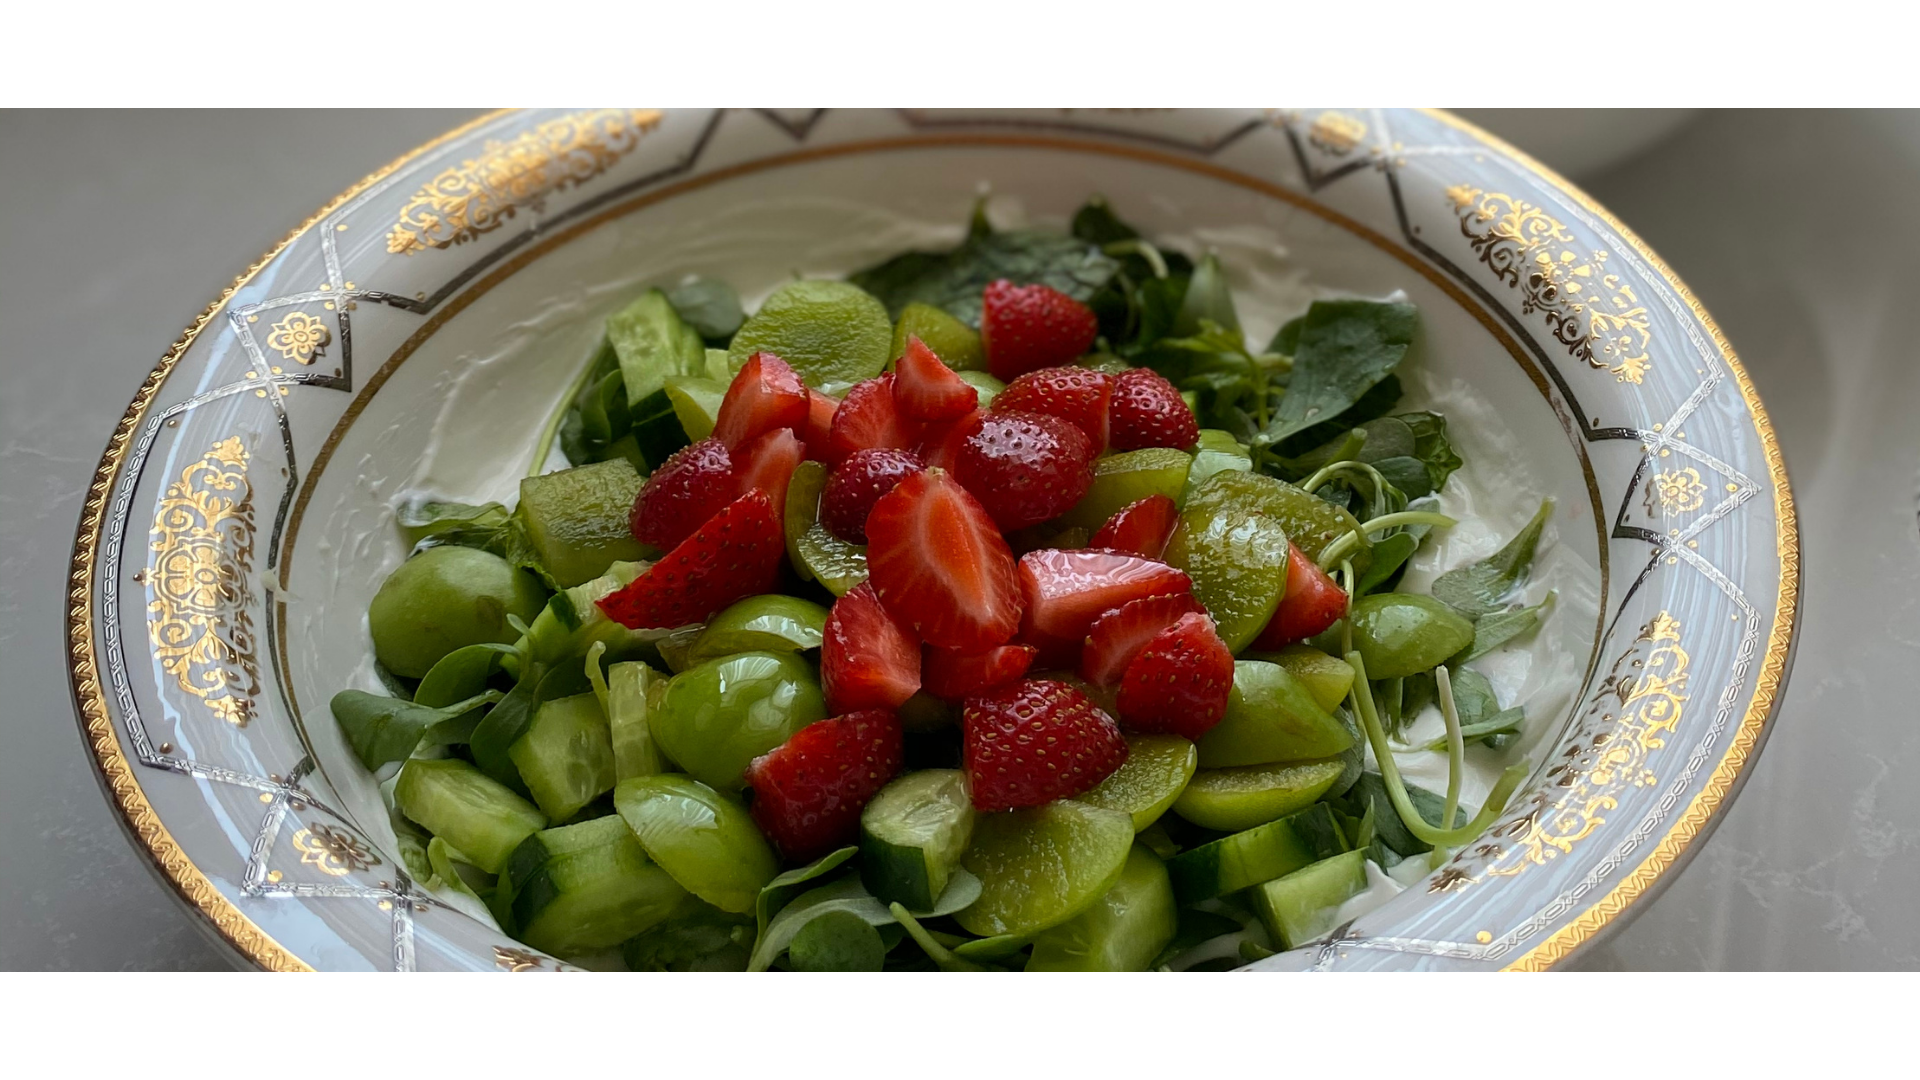 Çilekli, erikli semizotu salatası görseli.